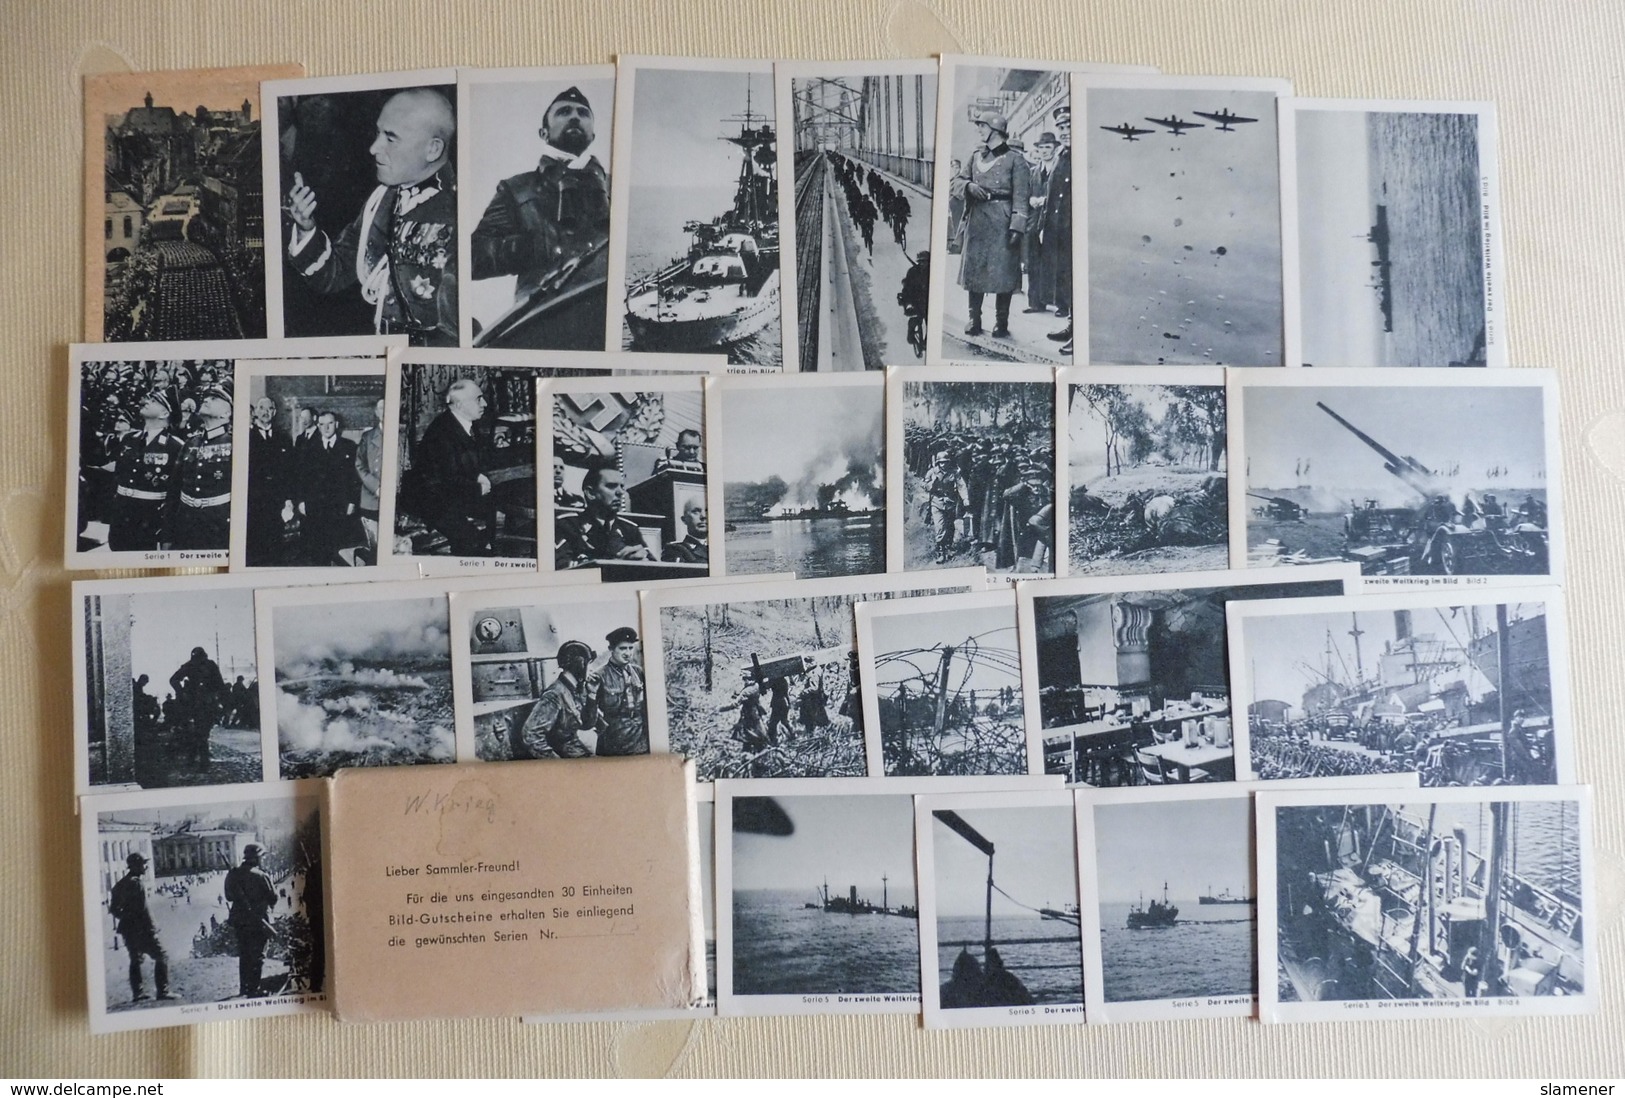 Komplette Sammlung "Der zweite Weltkrieg im Bild" Zigarettenbilder Eilebrecht,12 x 30 Bilder in original Verpackungen